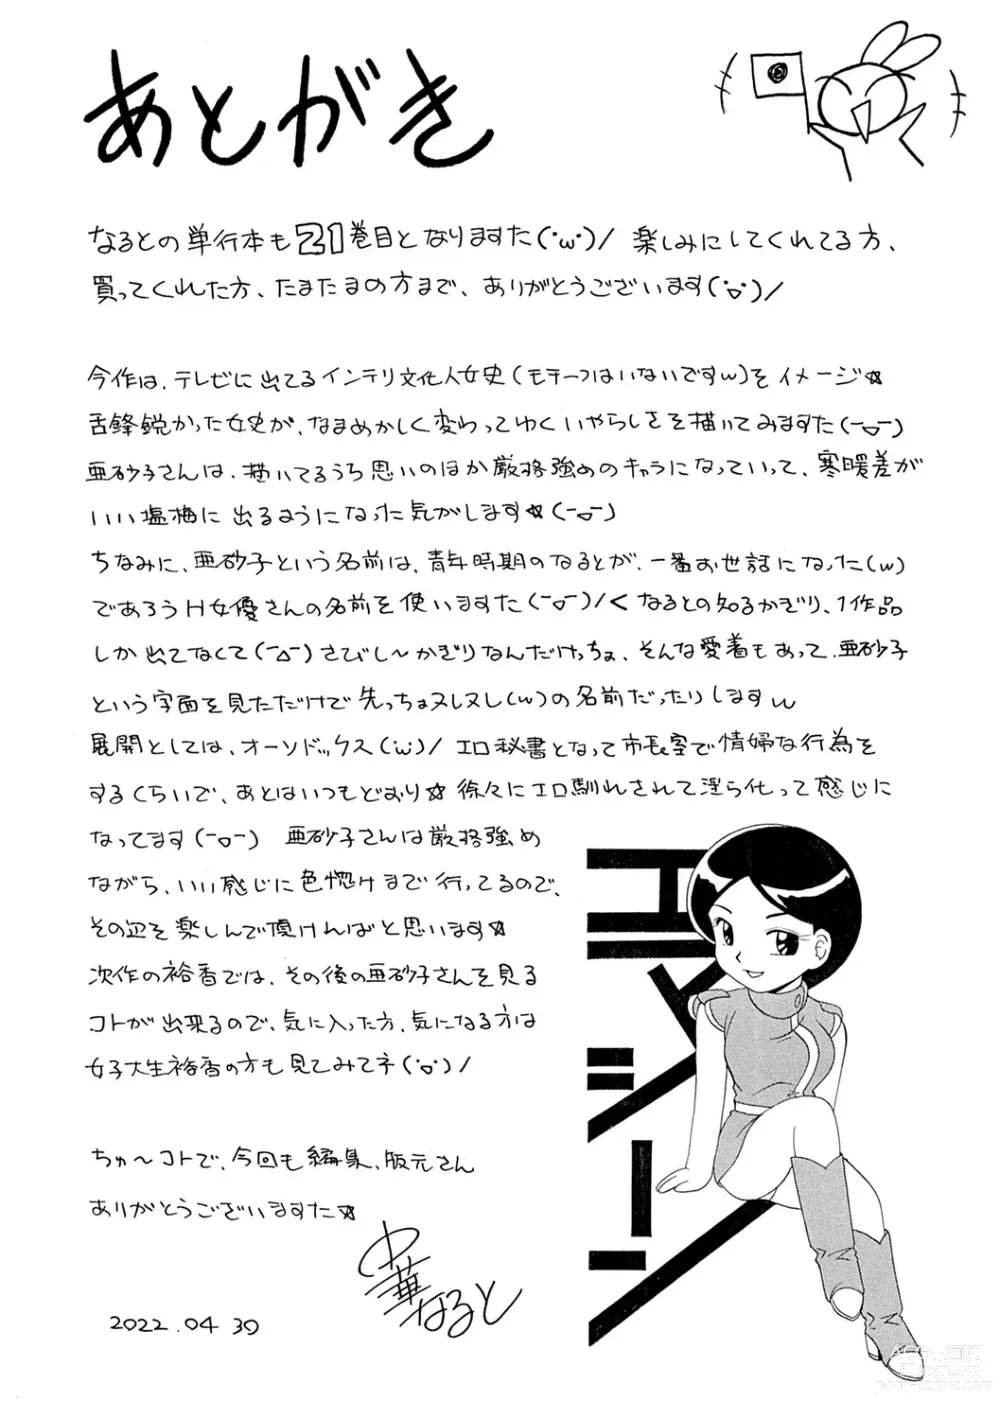 Page 186 of manga Jiyunkyouju Asako ~Bi Niku Hisho Ka~